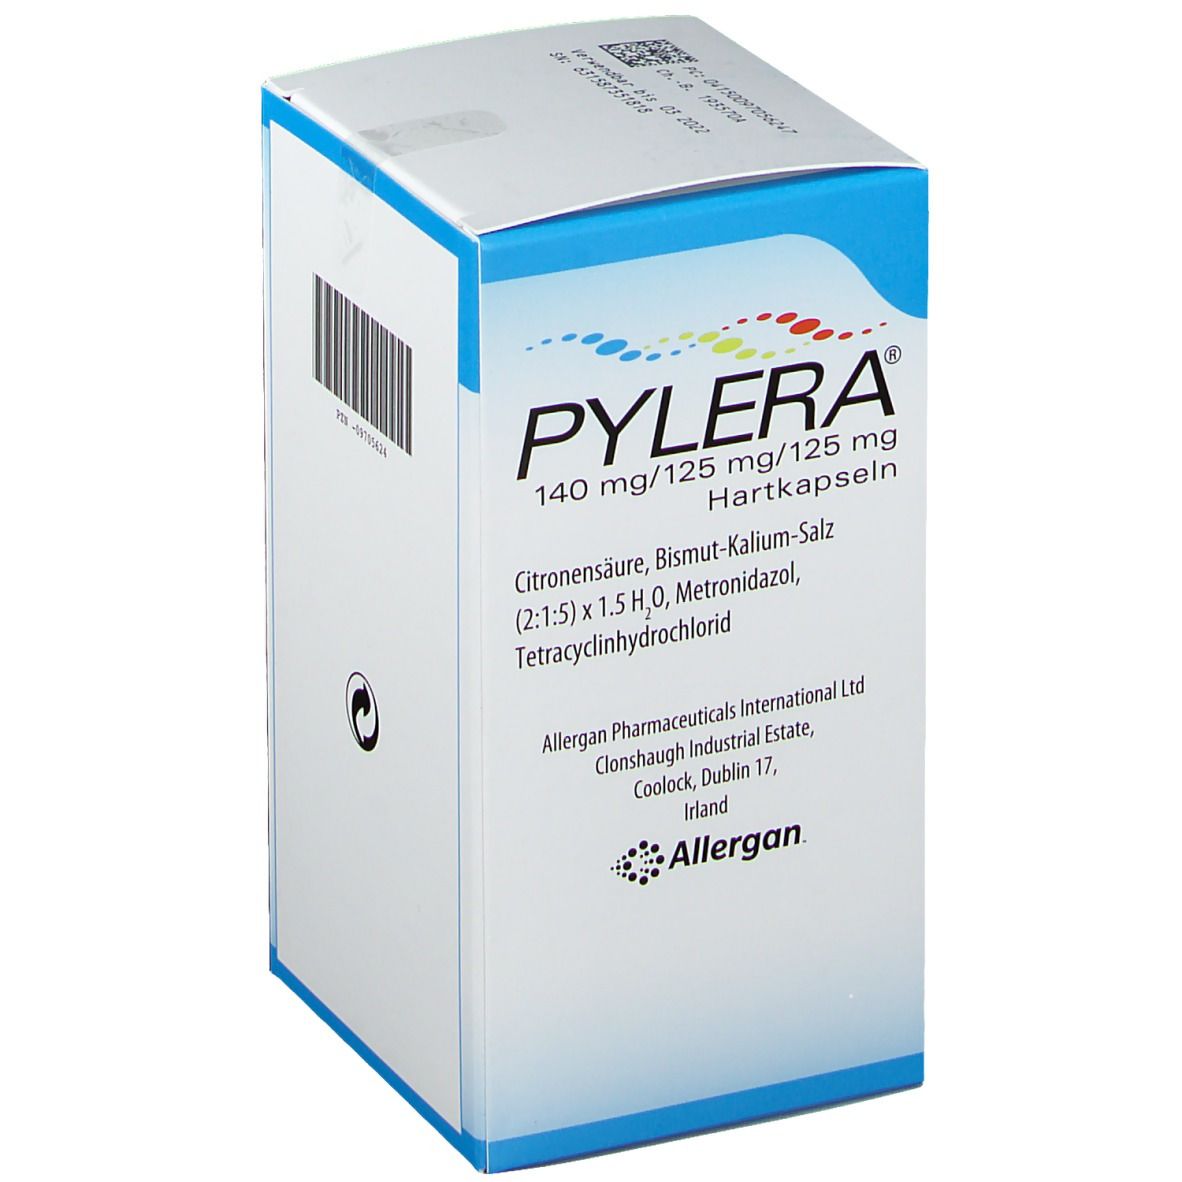 PYLERA ® 140 mg/125 mg/125 mg.